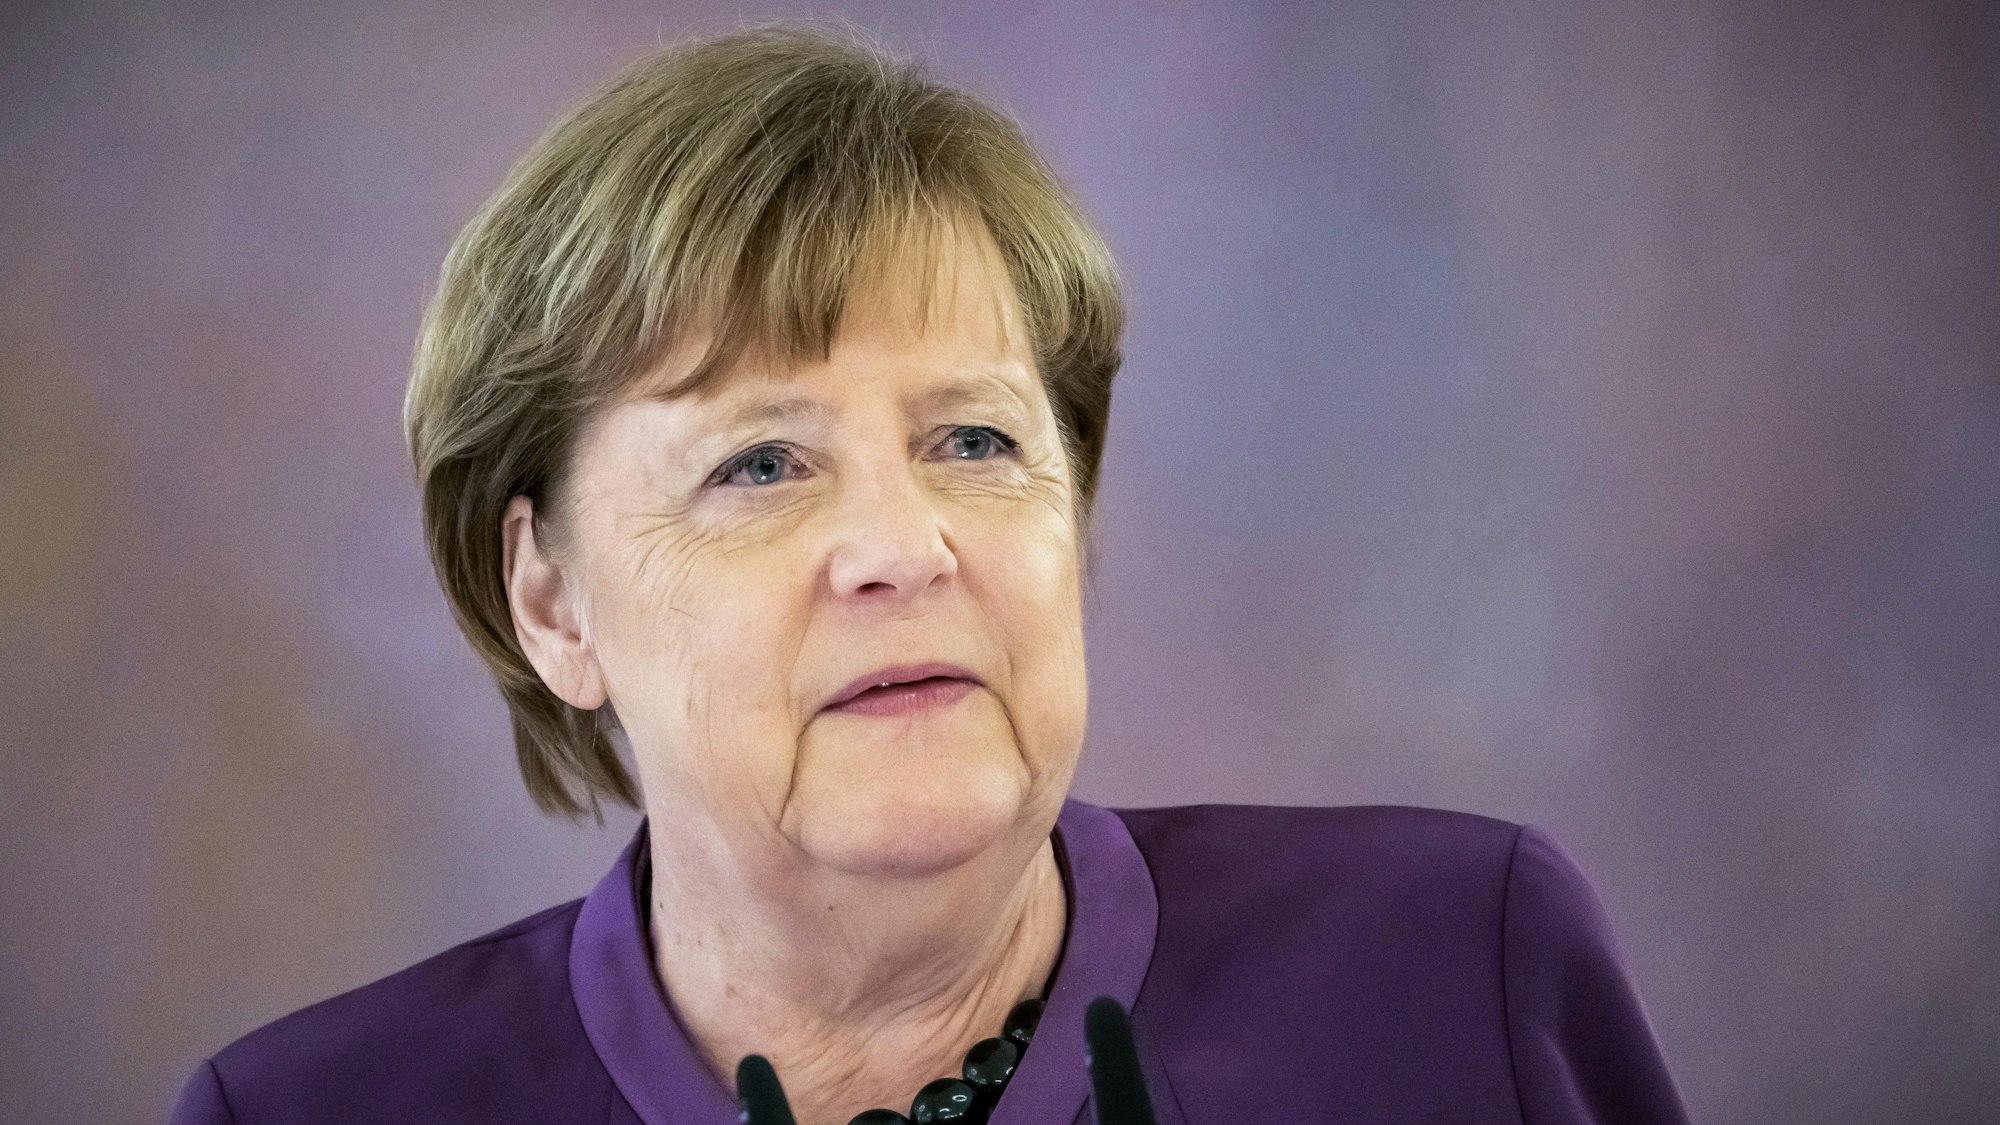 Angela Merkel, (CDU) hier bei der Verleihung des Verdienstordens der Bundesrepublik Deutschland in besonderer Ausführung, kann es nicht nachvollziehen, wenn Menschen aus Wut AfD wählen. (Archivbild)